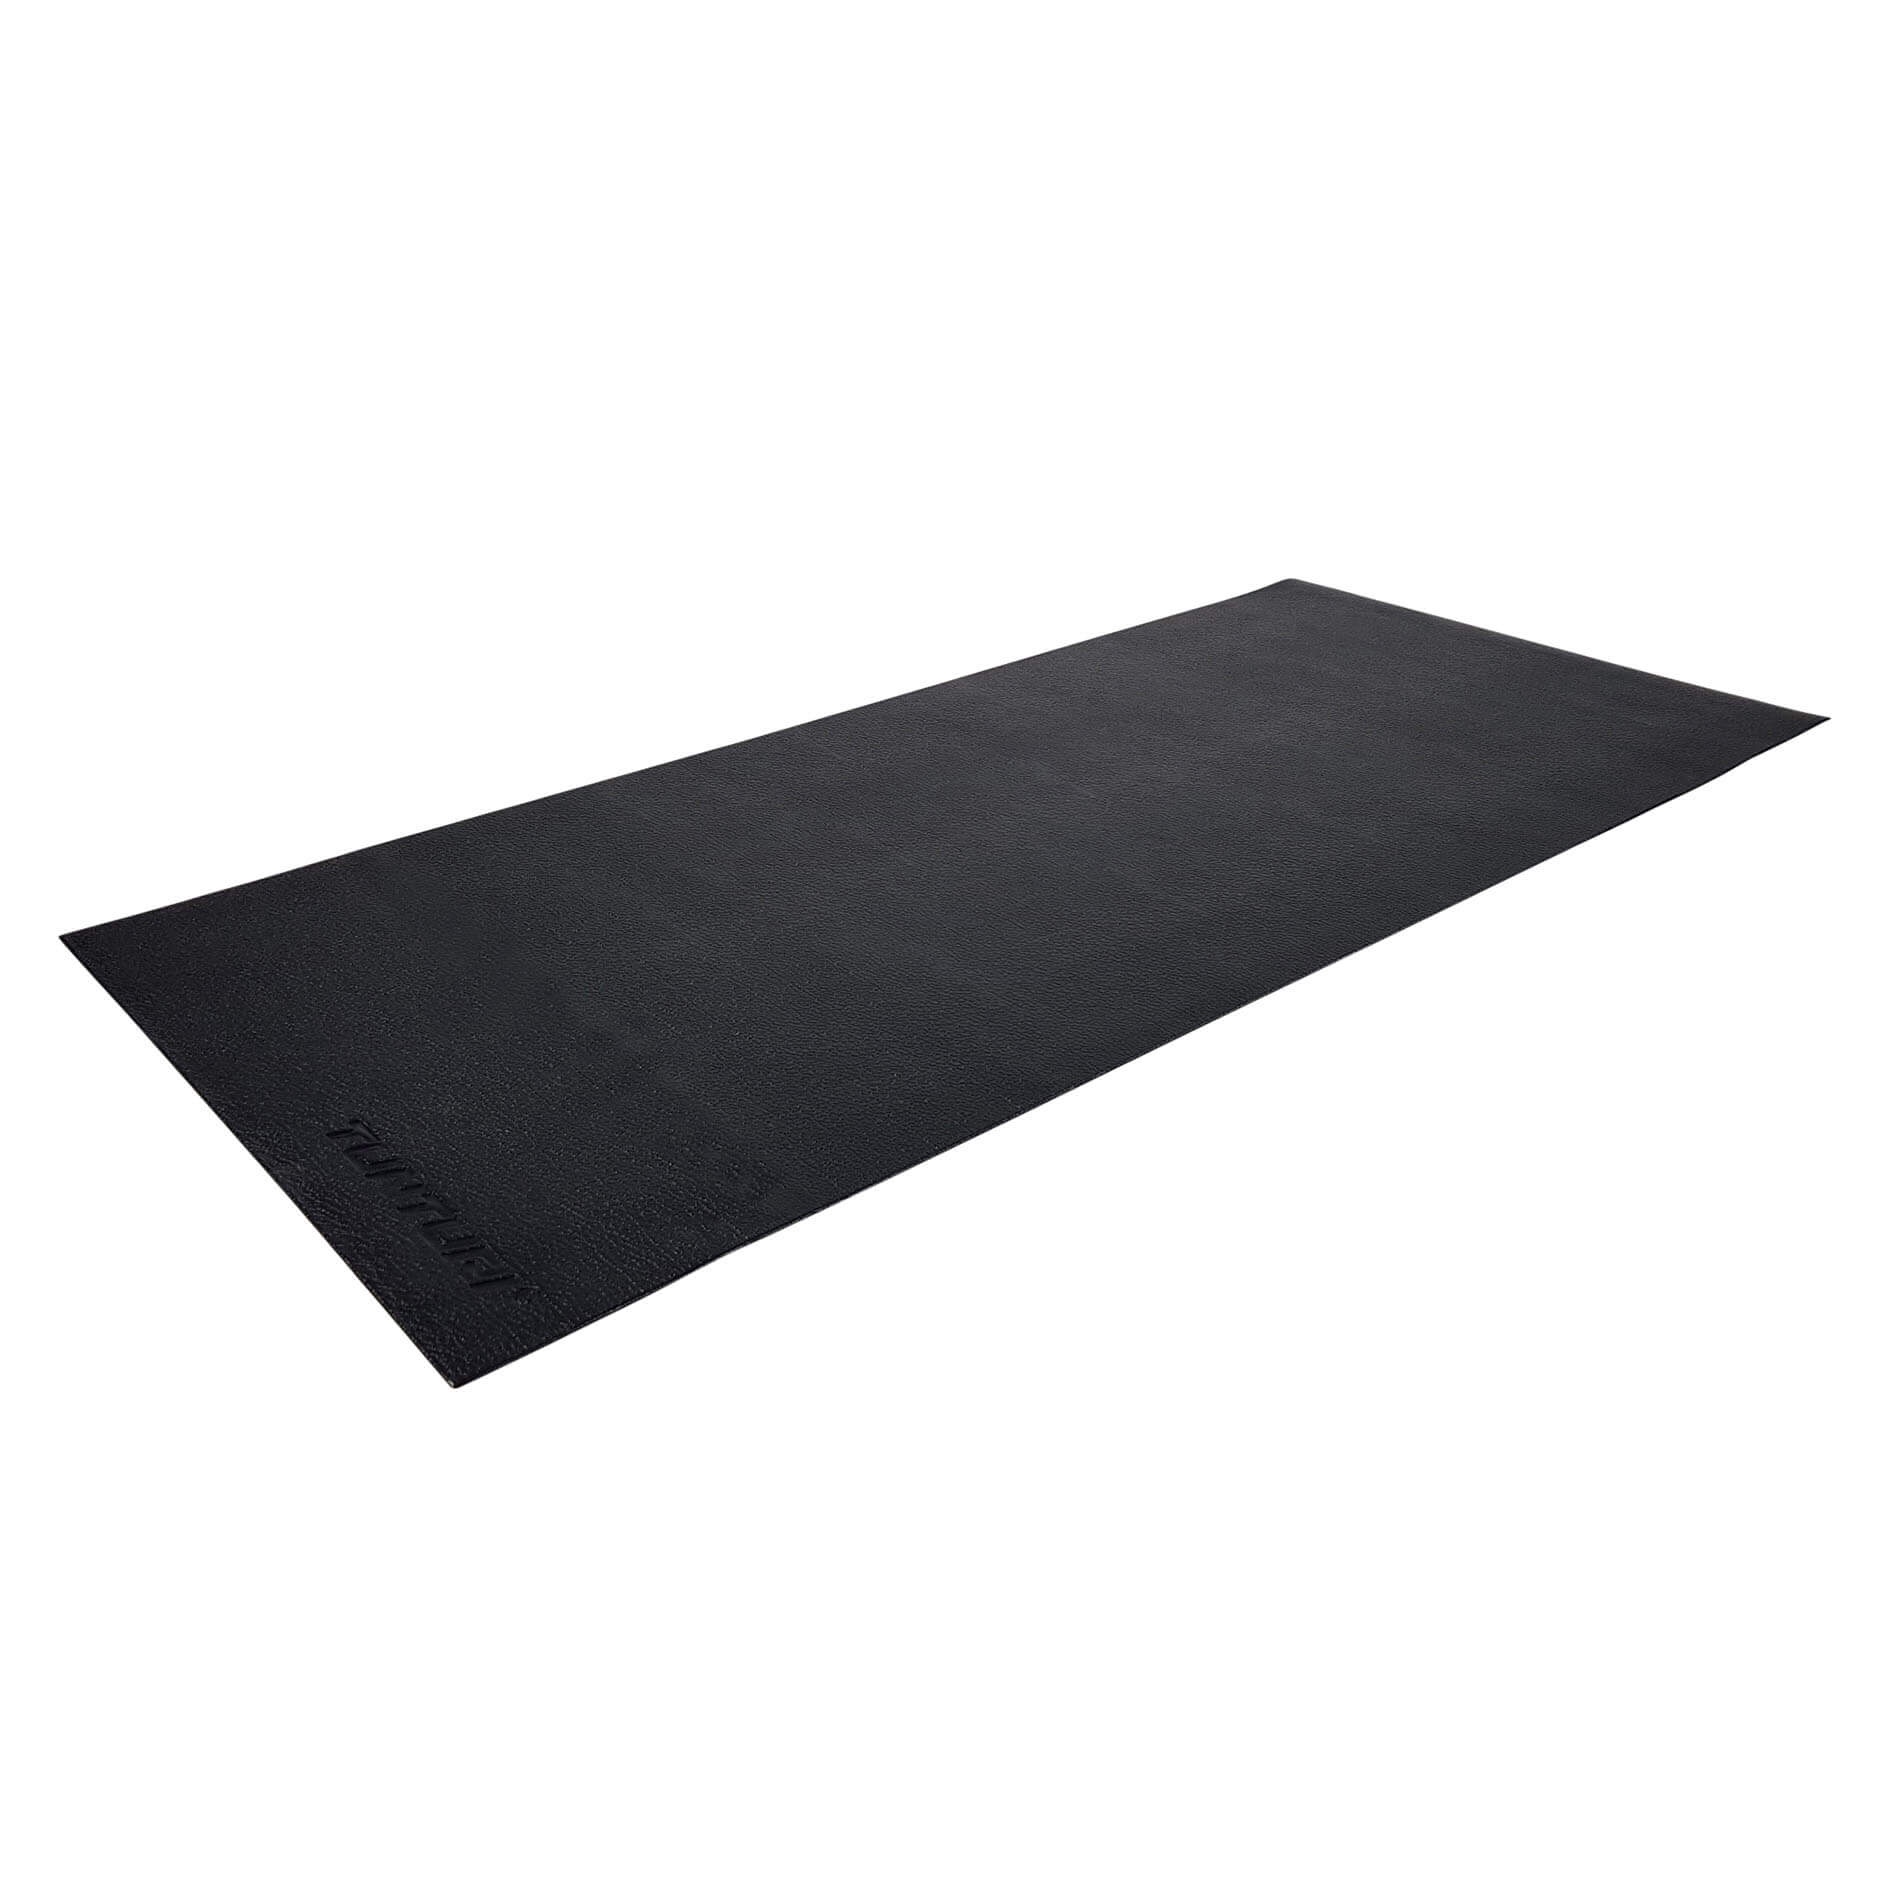 Loopband mat - Vloerbeschermmat - 200 x 95 x 0,5 cm - Zwart